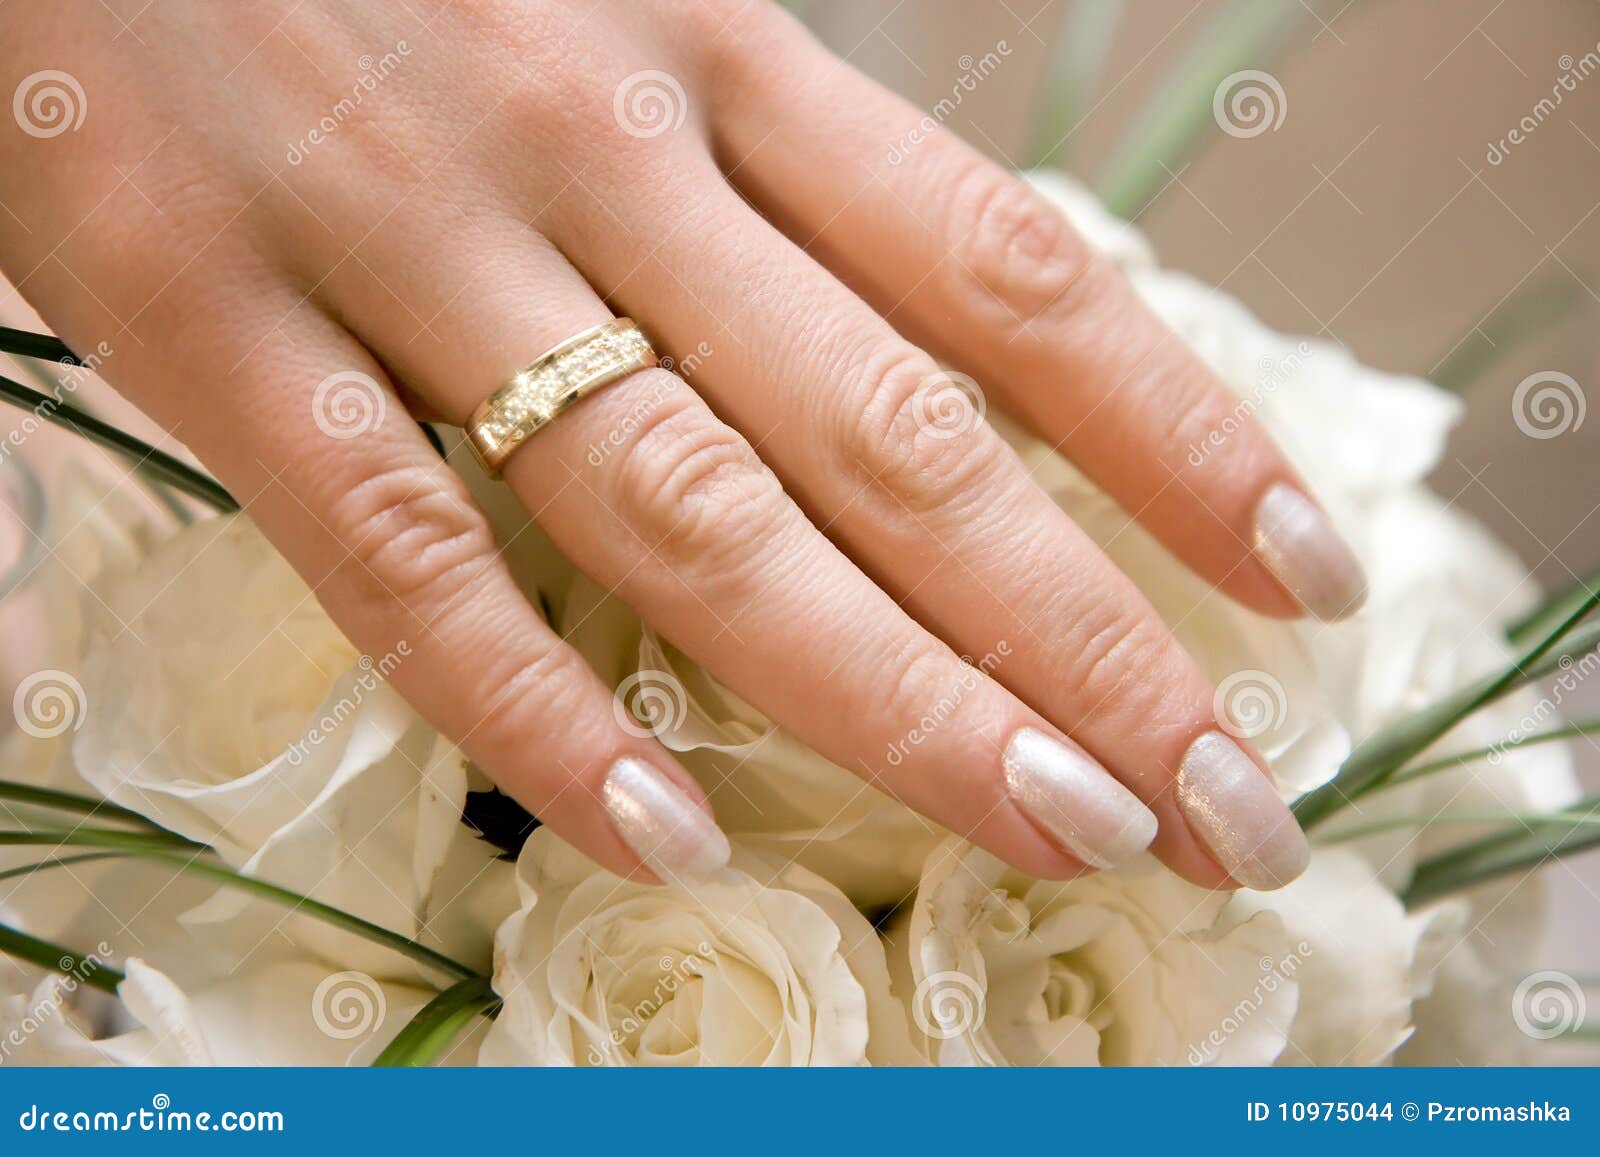 anello-di-cerimonia-nuziale-su-una-mano-femminile-10975044